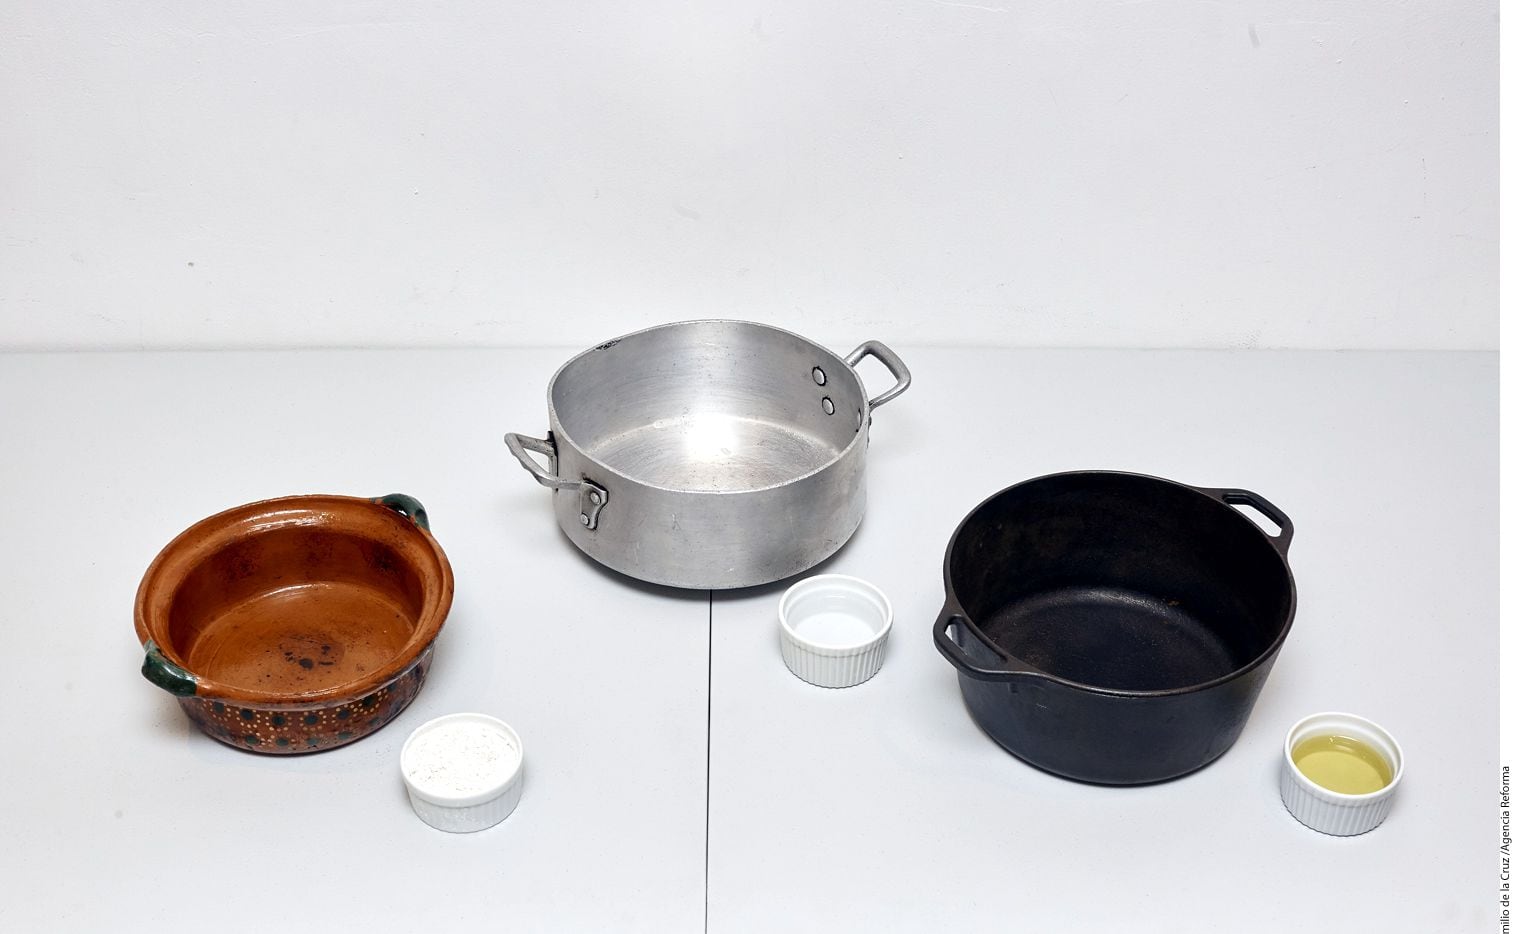 La manera tradicional de curar una olla de barro es con agua y cal./ AGENCIA REFORMA
